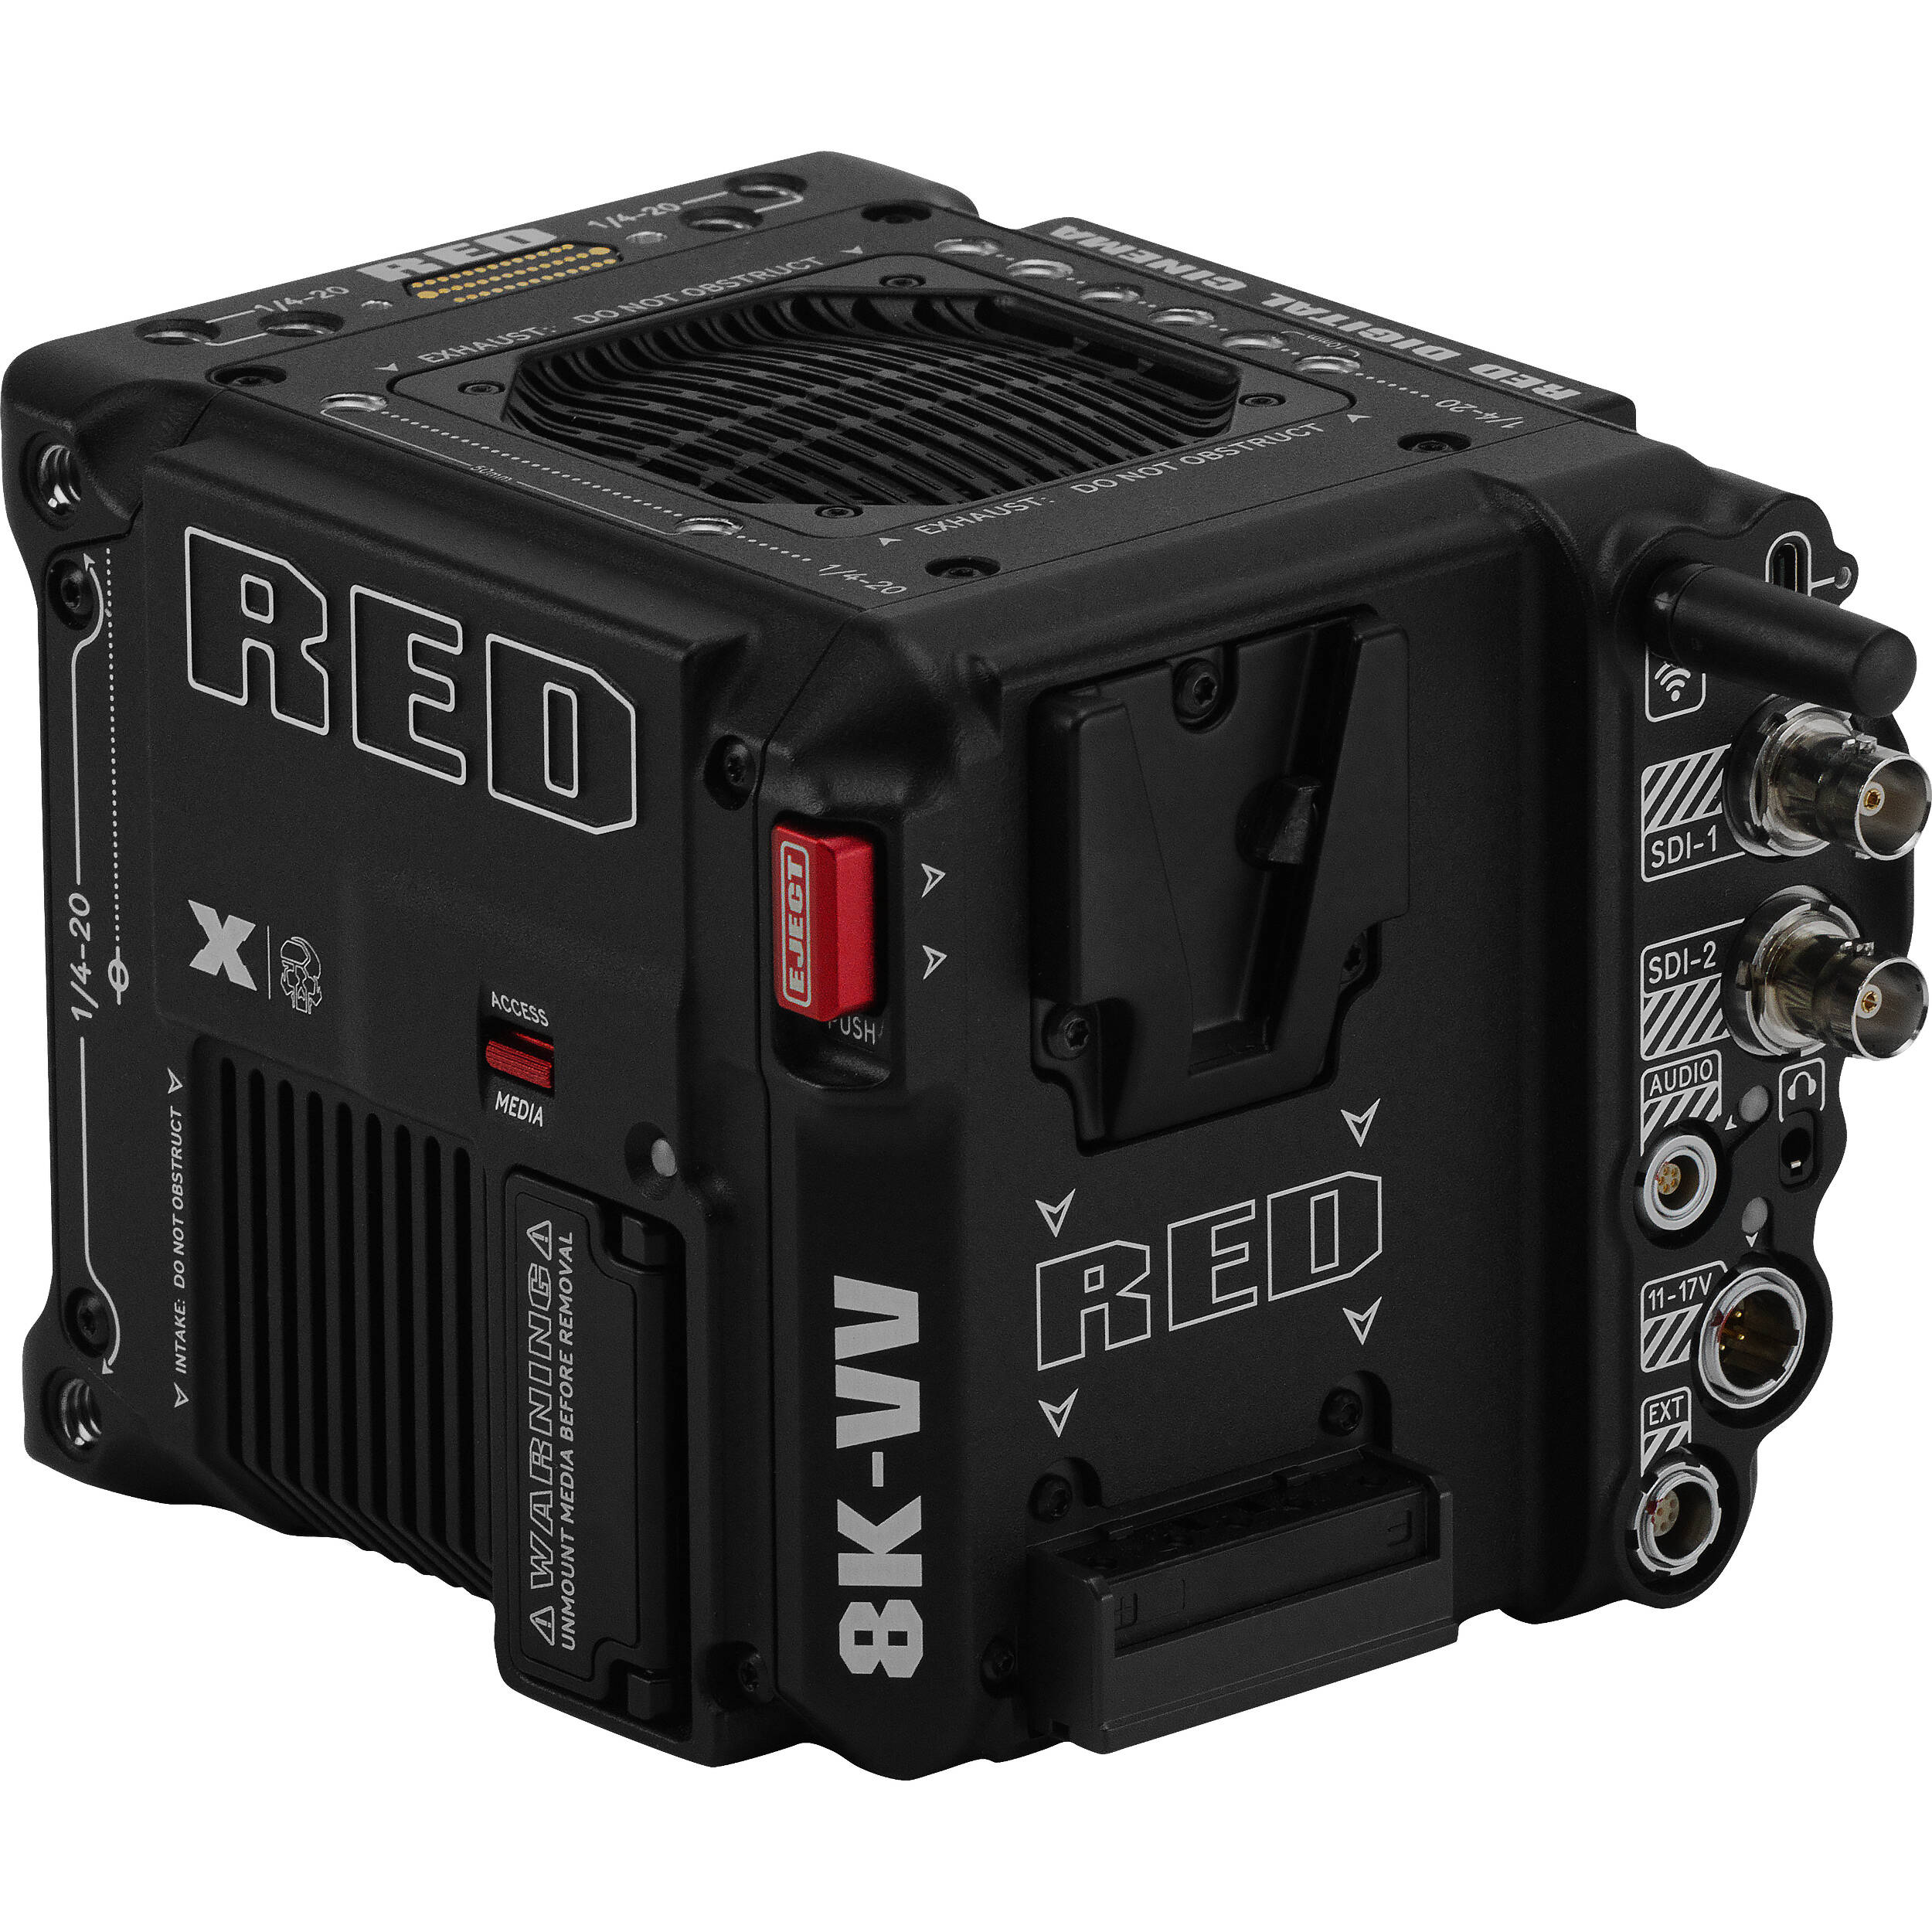 Red Digital Cinema V-Raptor [x] 8k VV Camera (V-Mount)